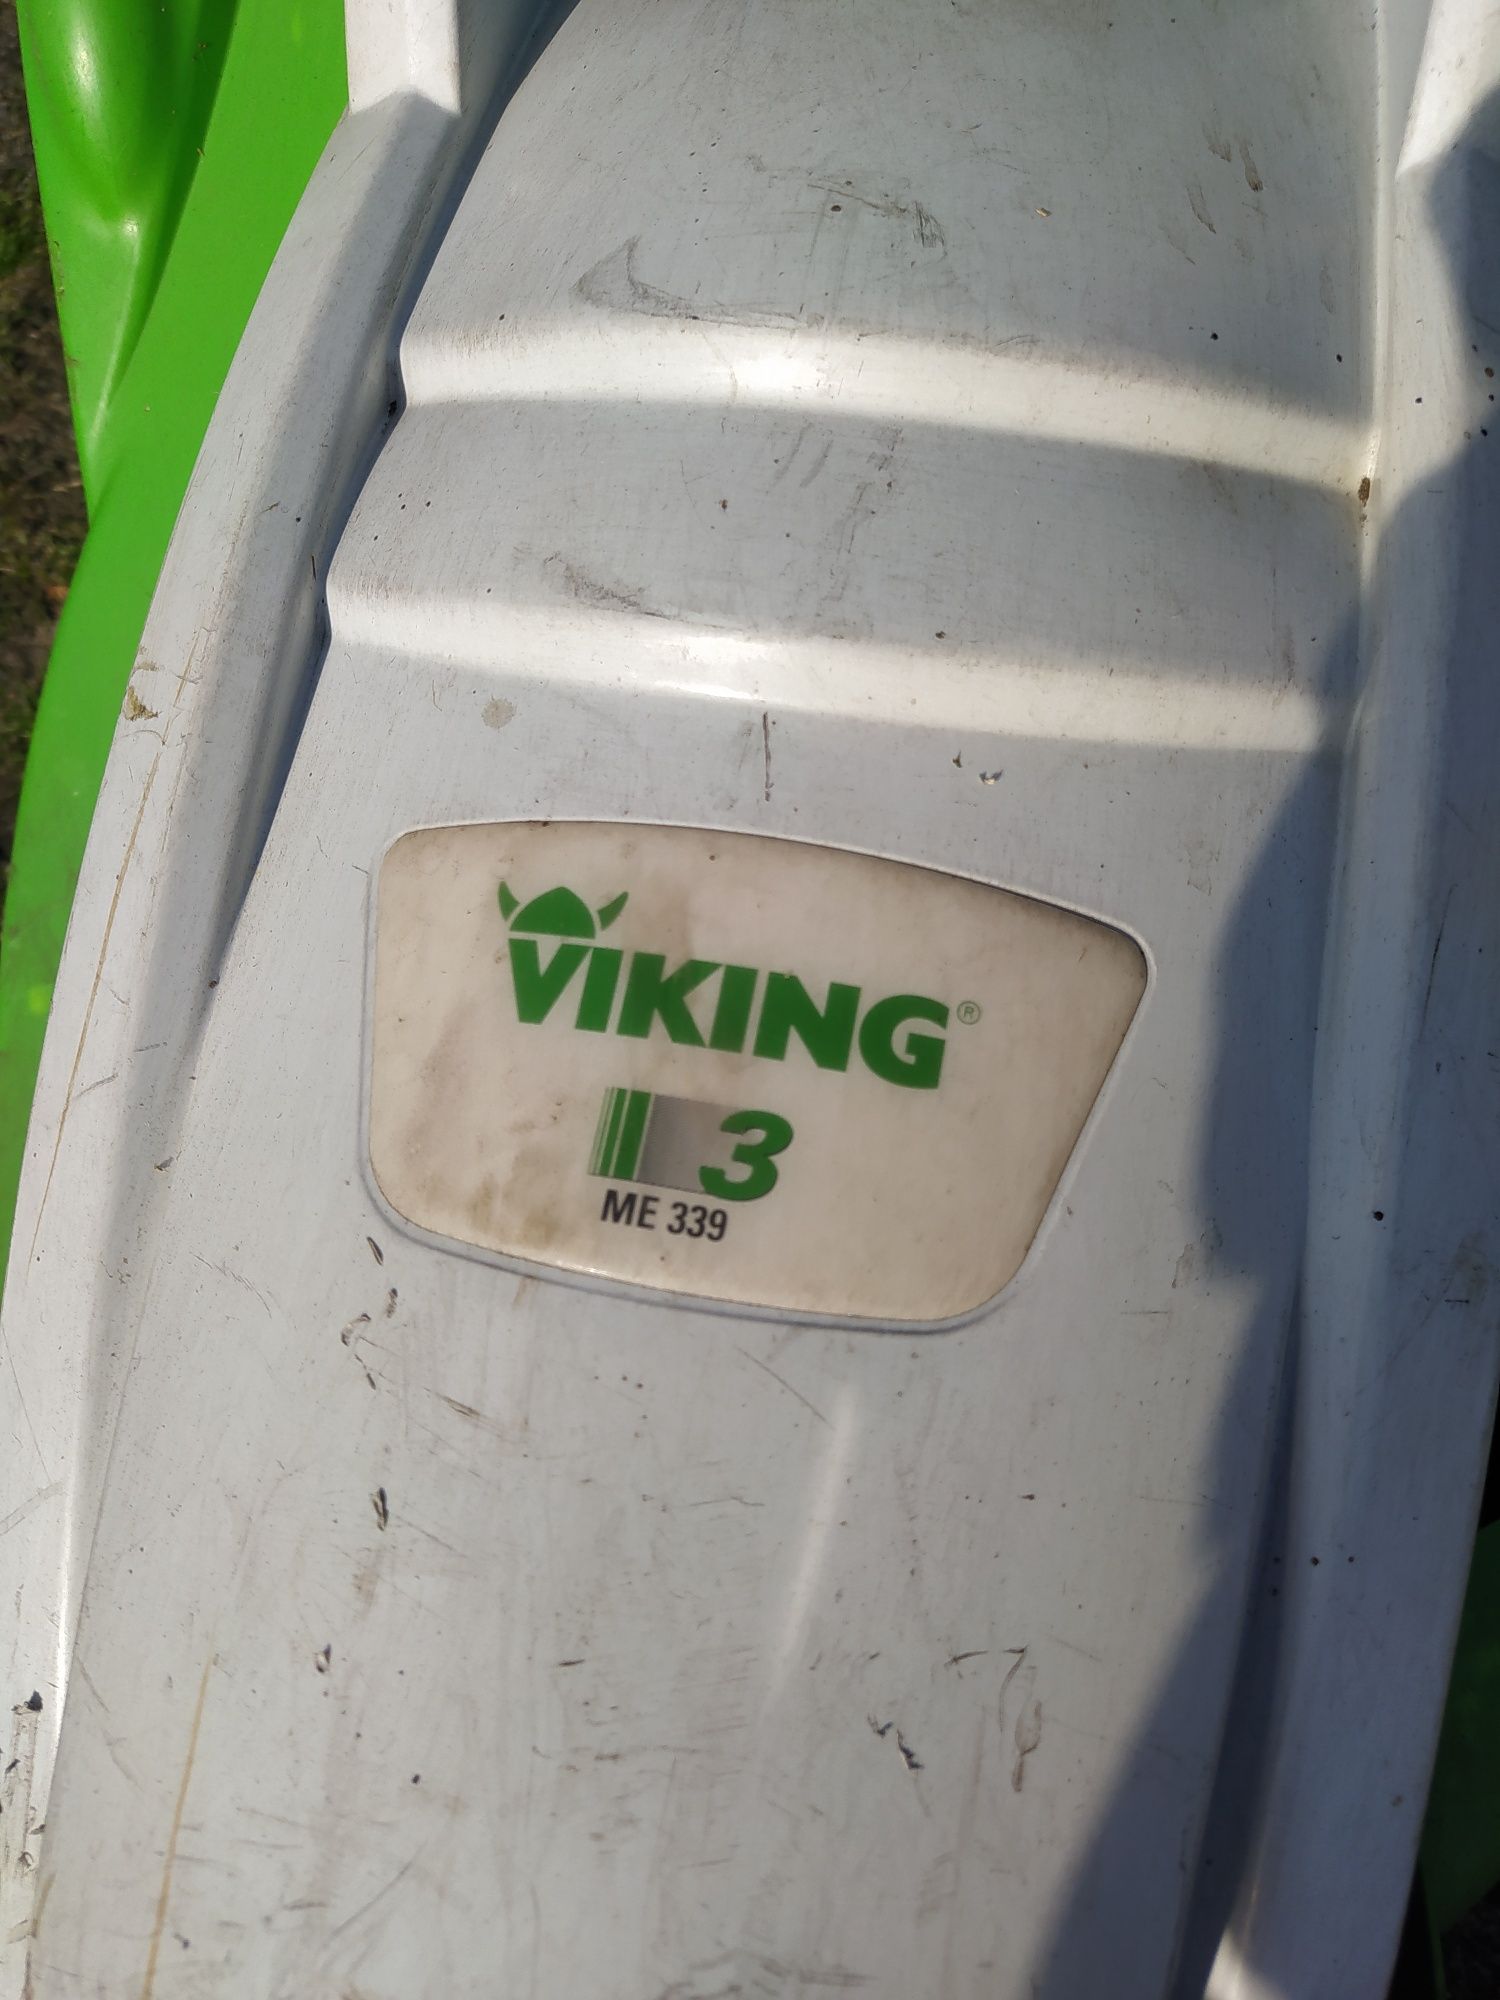 Kosiarką Viking ME 339